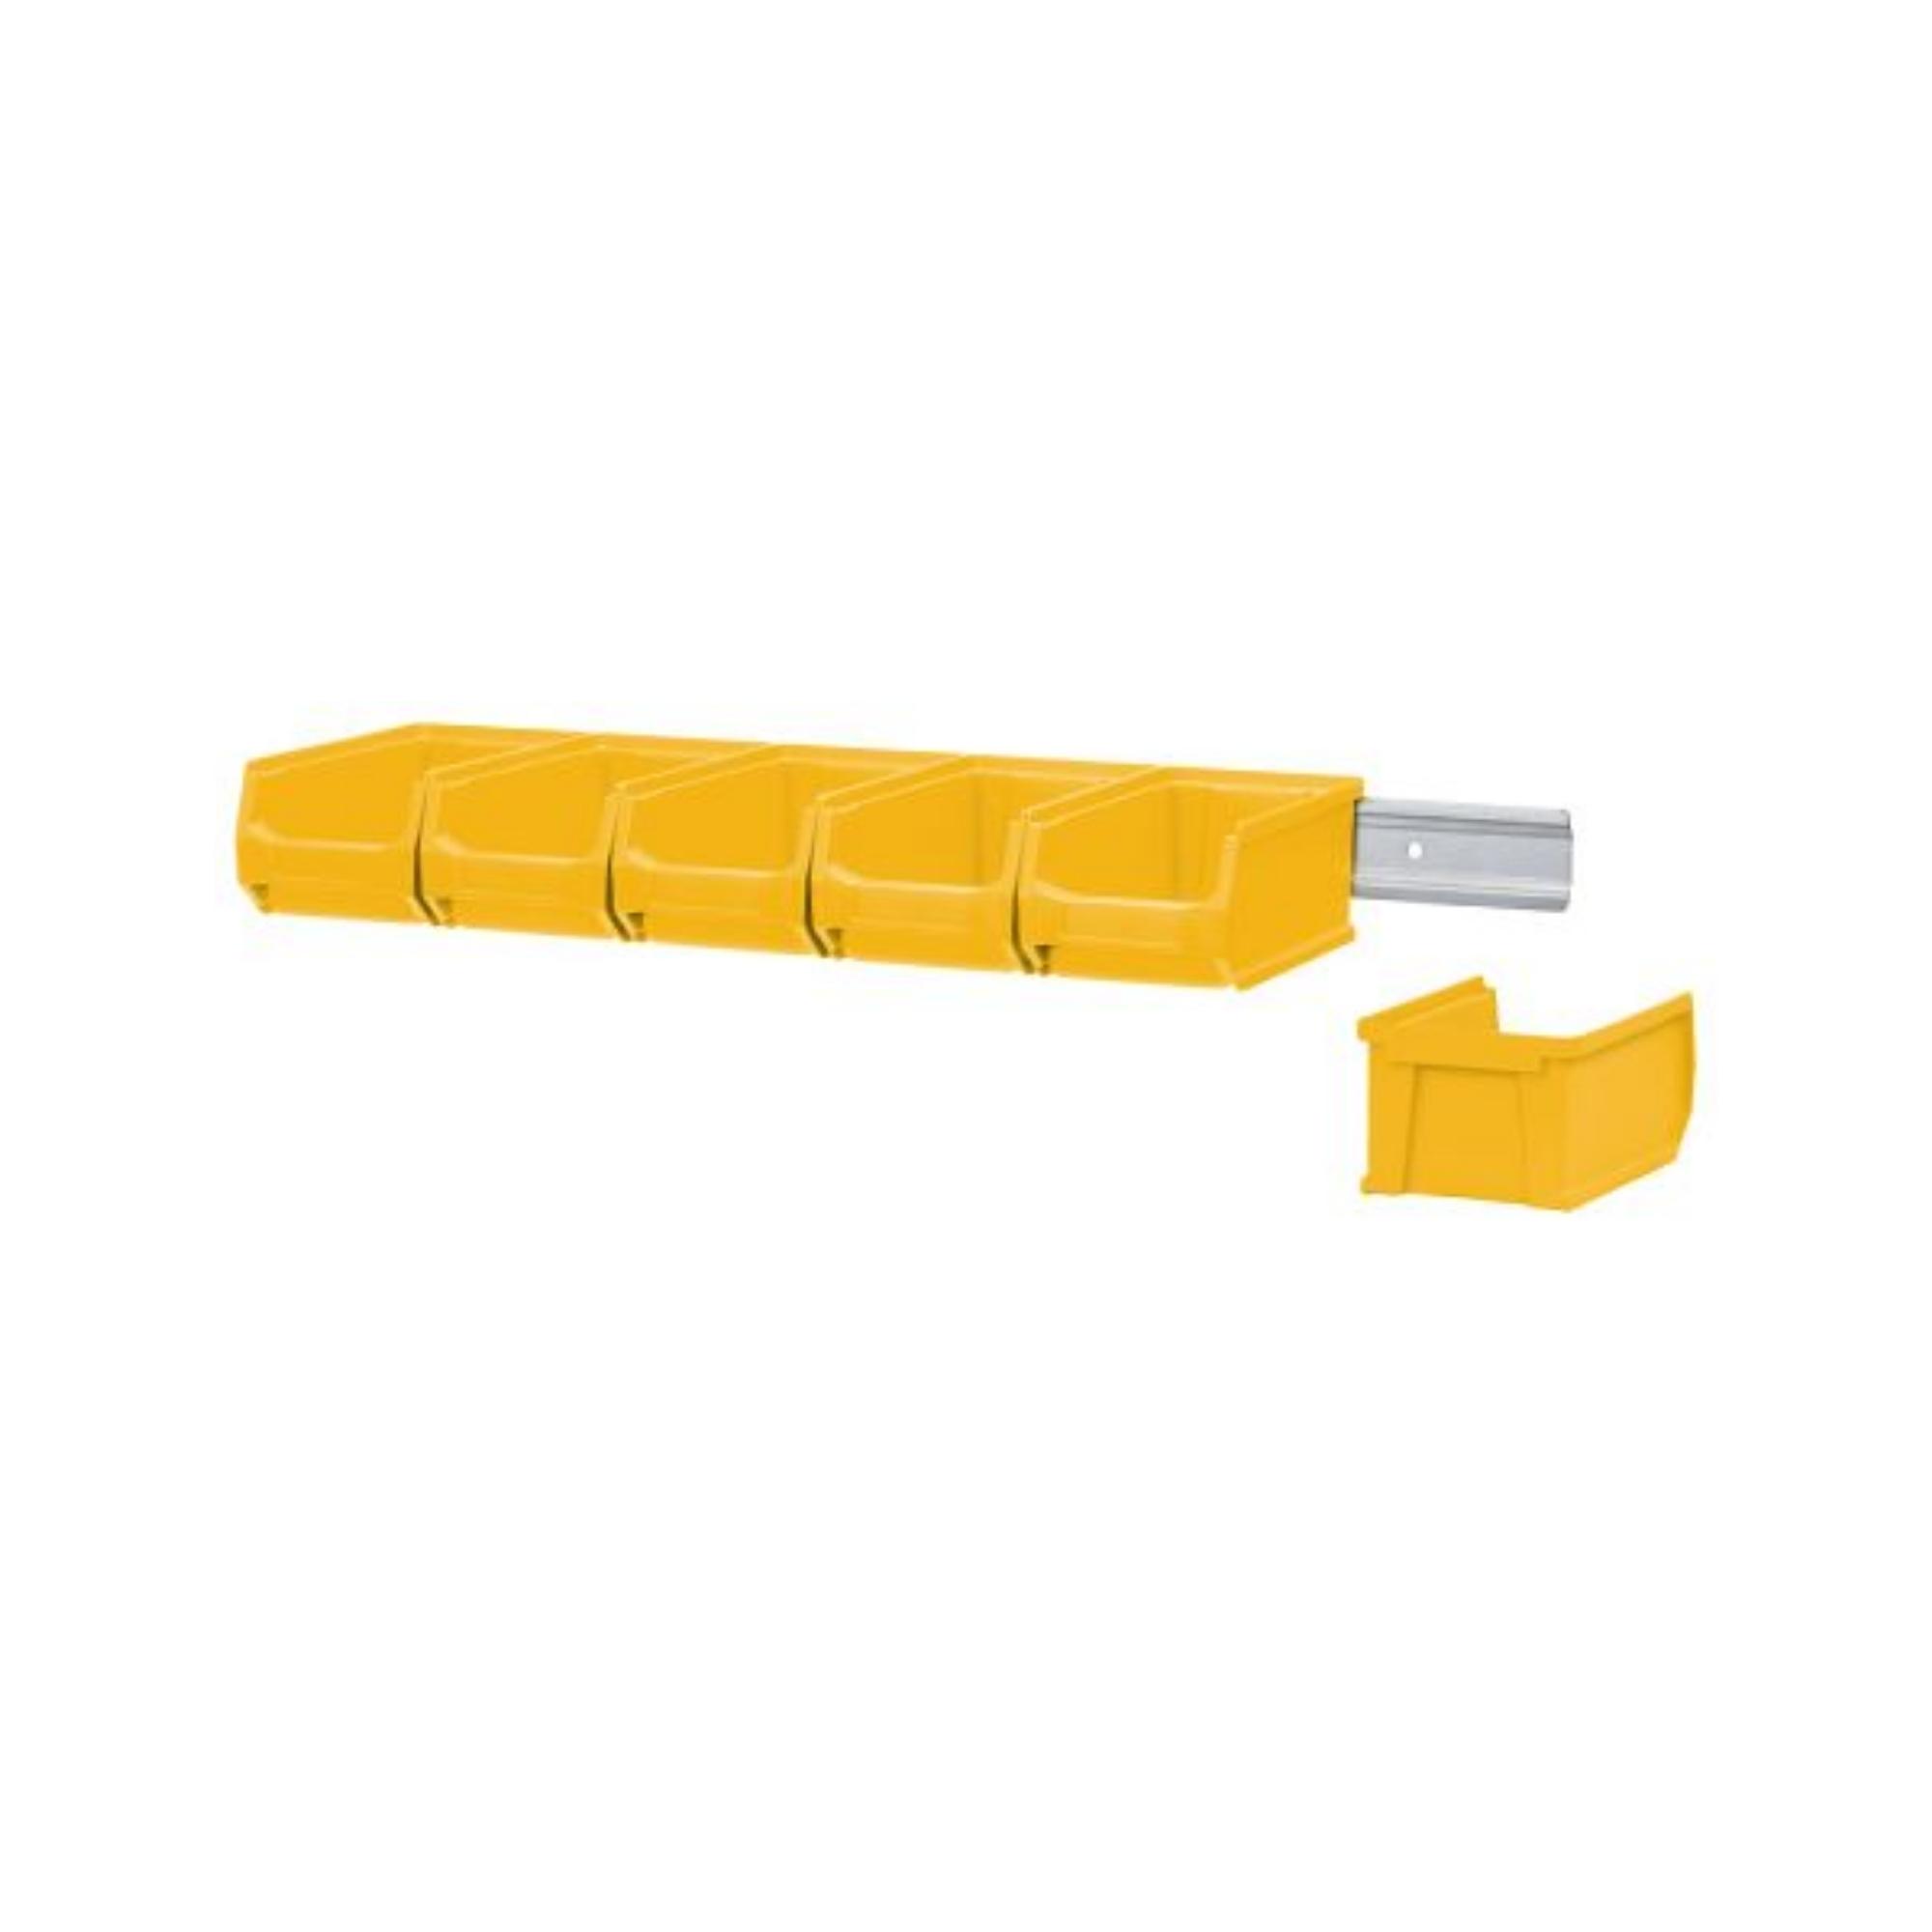 Wandleiste mit 6x Gelbe Sichtlagerbox 2.0 | HxBxT 7,6x60,5x17,6cm | Wandhalterung, Kleinteileaufbewahrung, Sortimentsboxhalterung